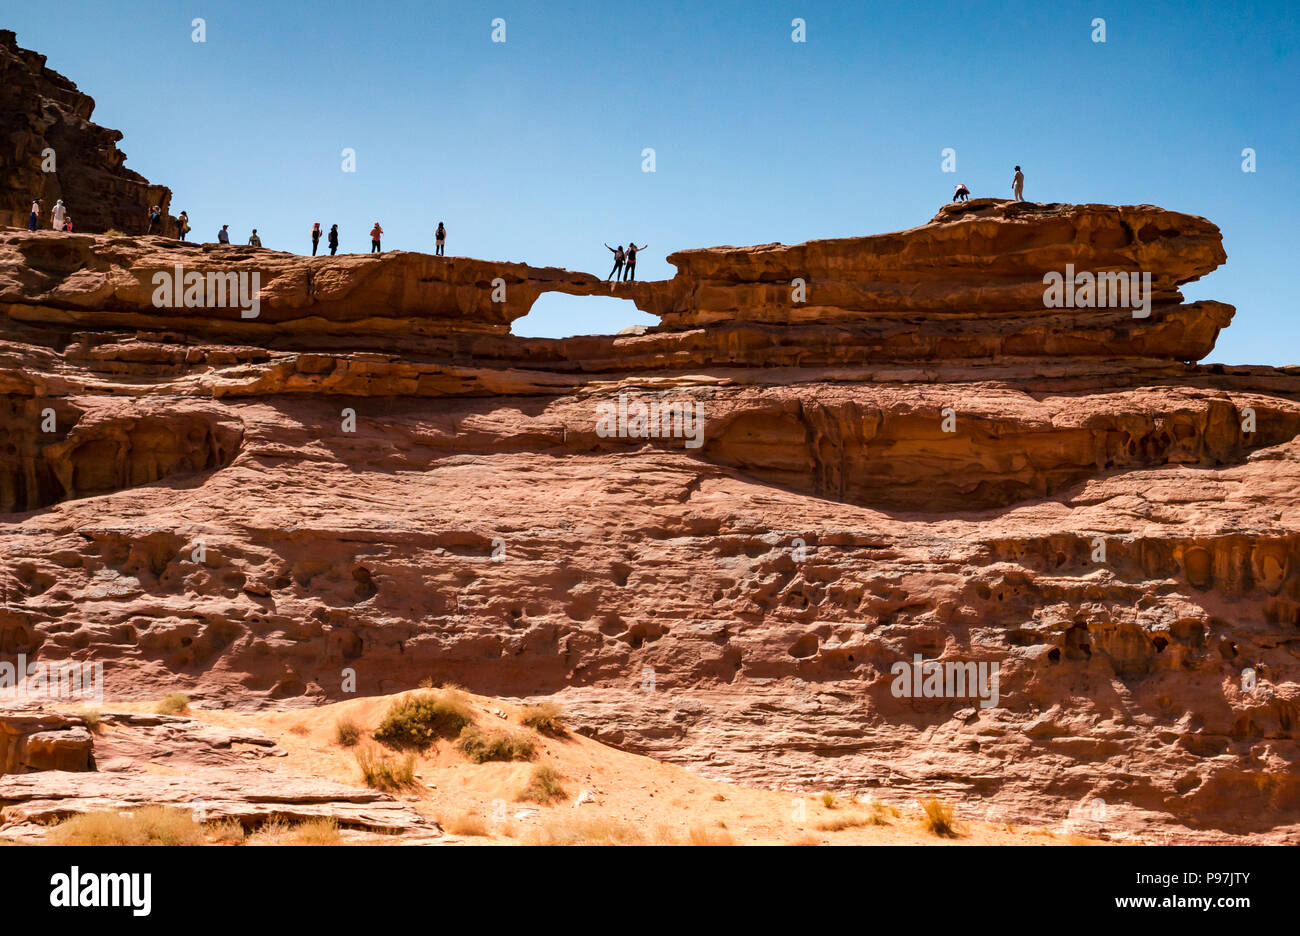 I turisti che posano per una fotografia in piedi su un enorme arco naturale di roccia, ponte Wadi Rum vallata desertica, Giordania, Medio Oriente Foto Stock